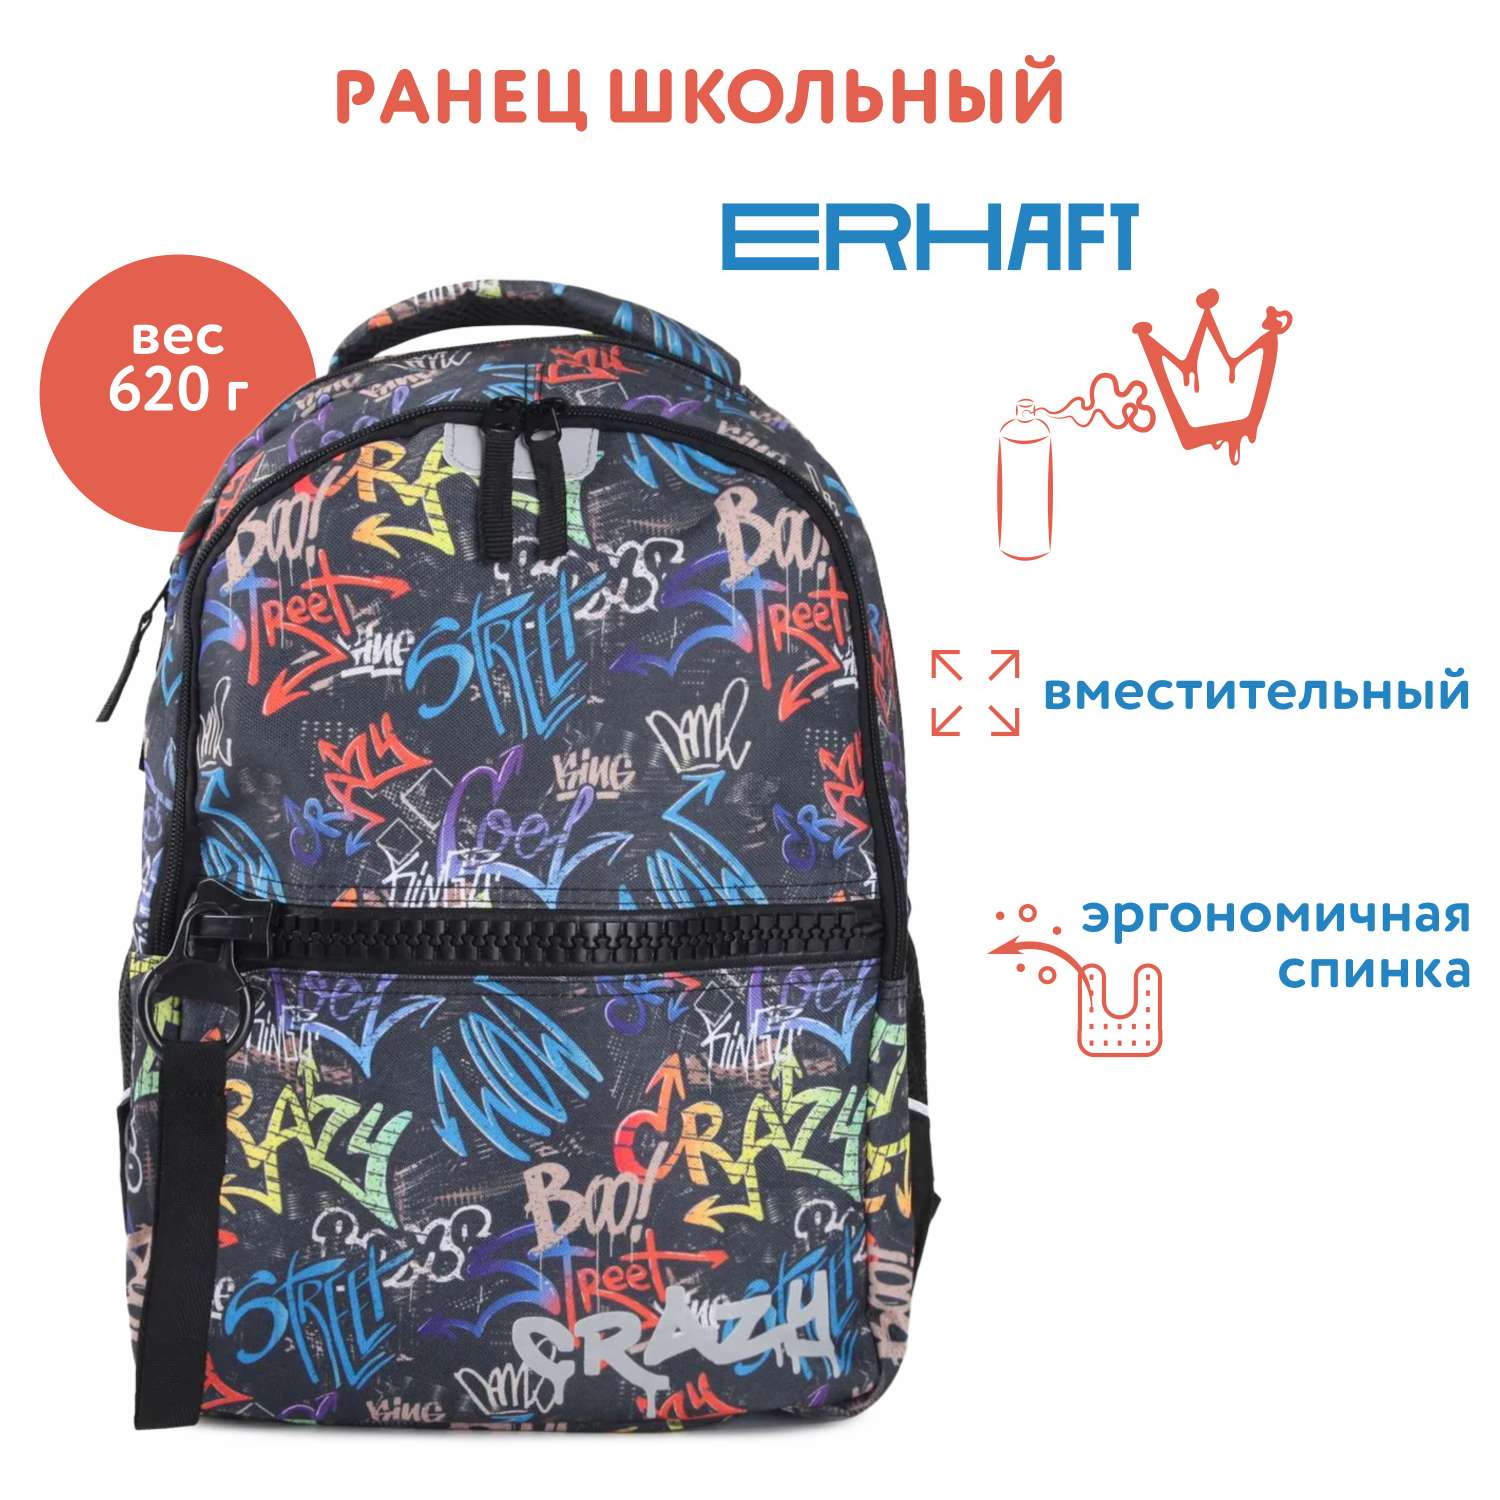 Рюкзак школьный Erhaft Граффити BV01 - фото 1